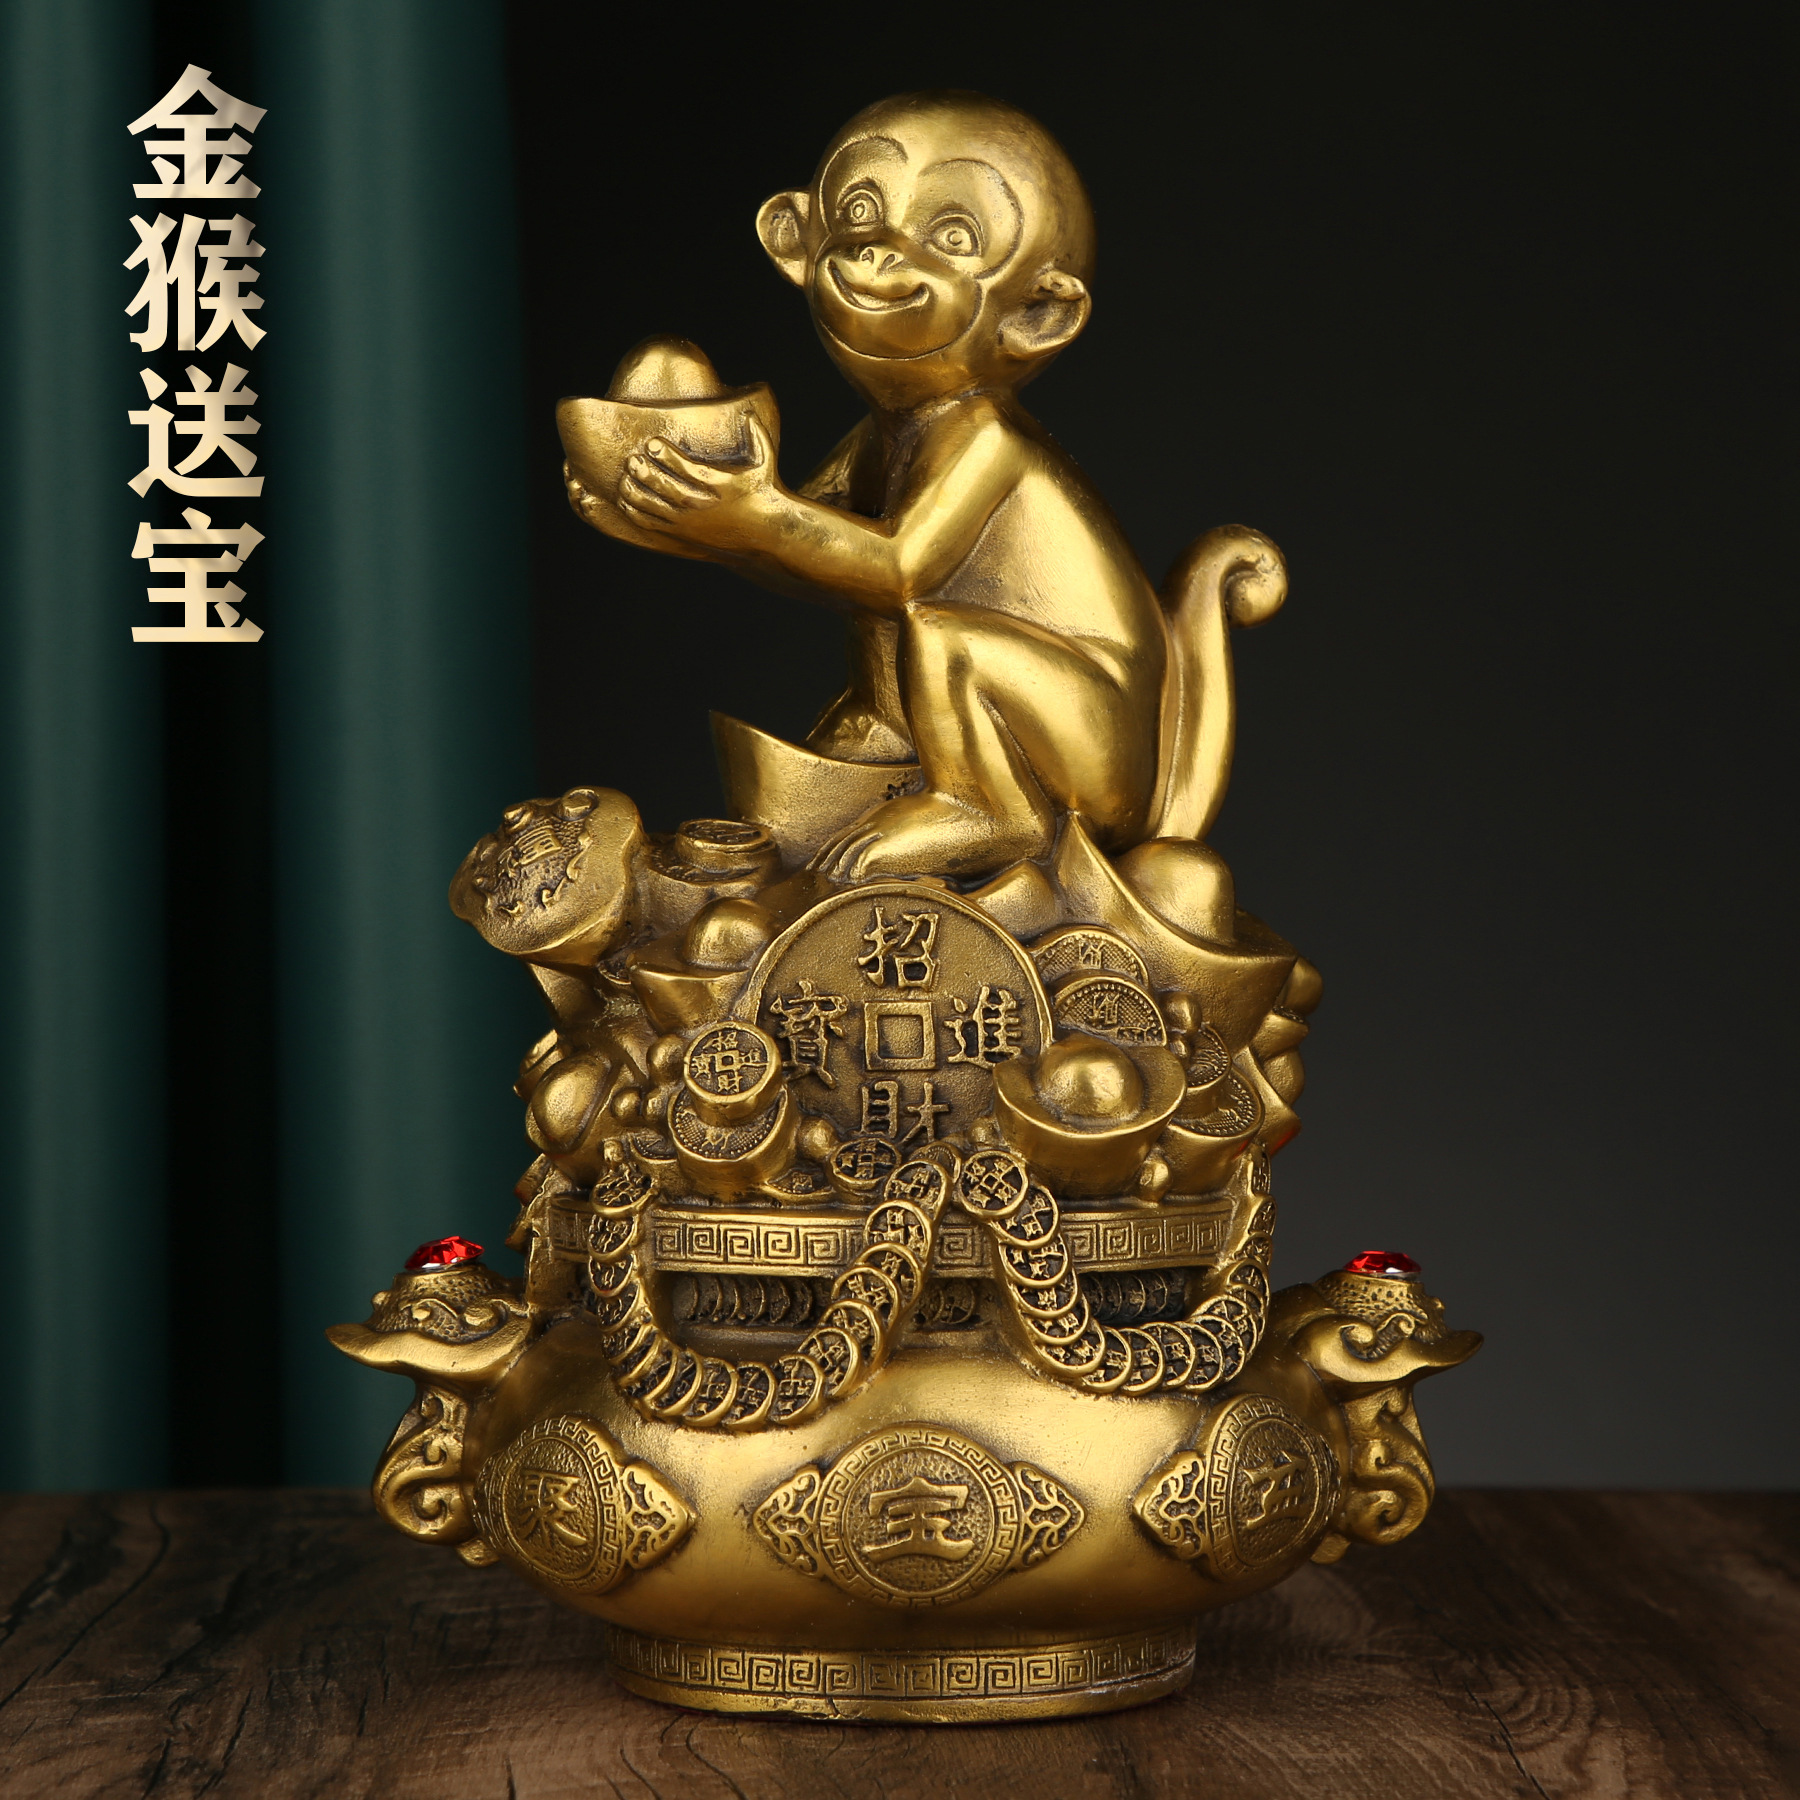 铜缘铜器厂家直销铜金猴聚宝盆摆件如意客厅店铺前台礼品